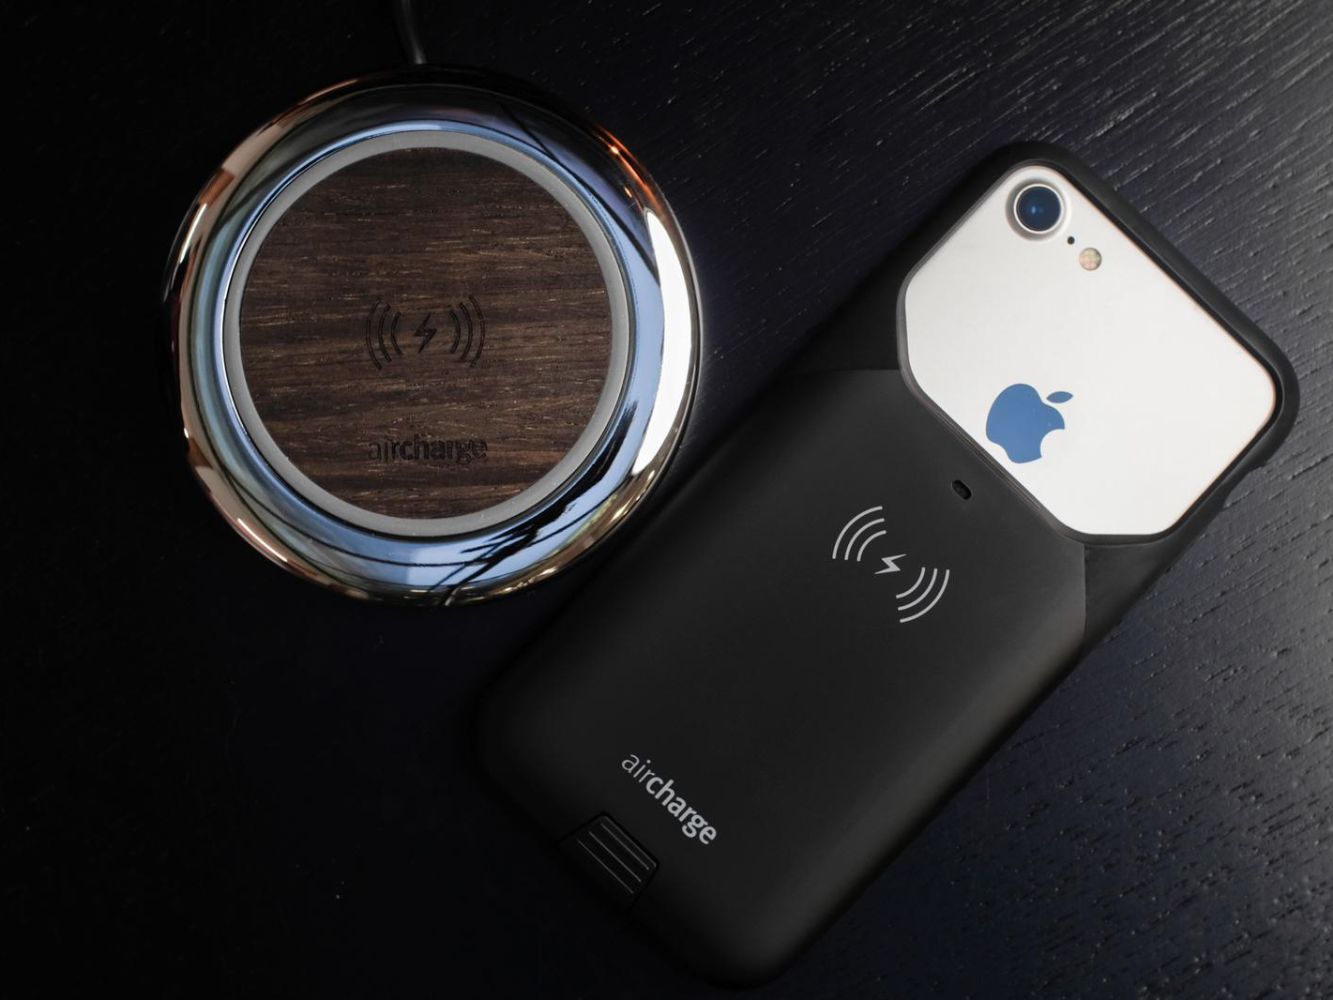 Hardheid Vergelijkbaar diepgaand Wireless Charging Case for the iPhone 7 case - Aircharge